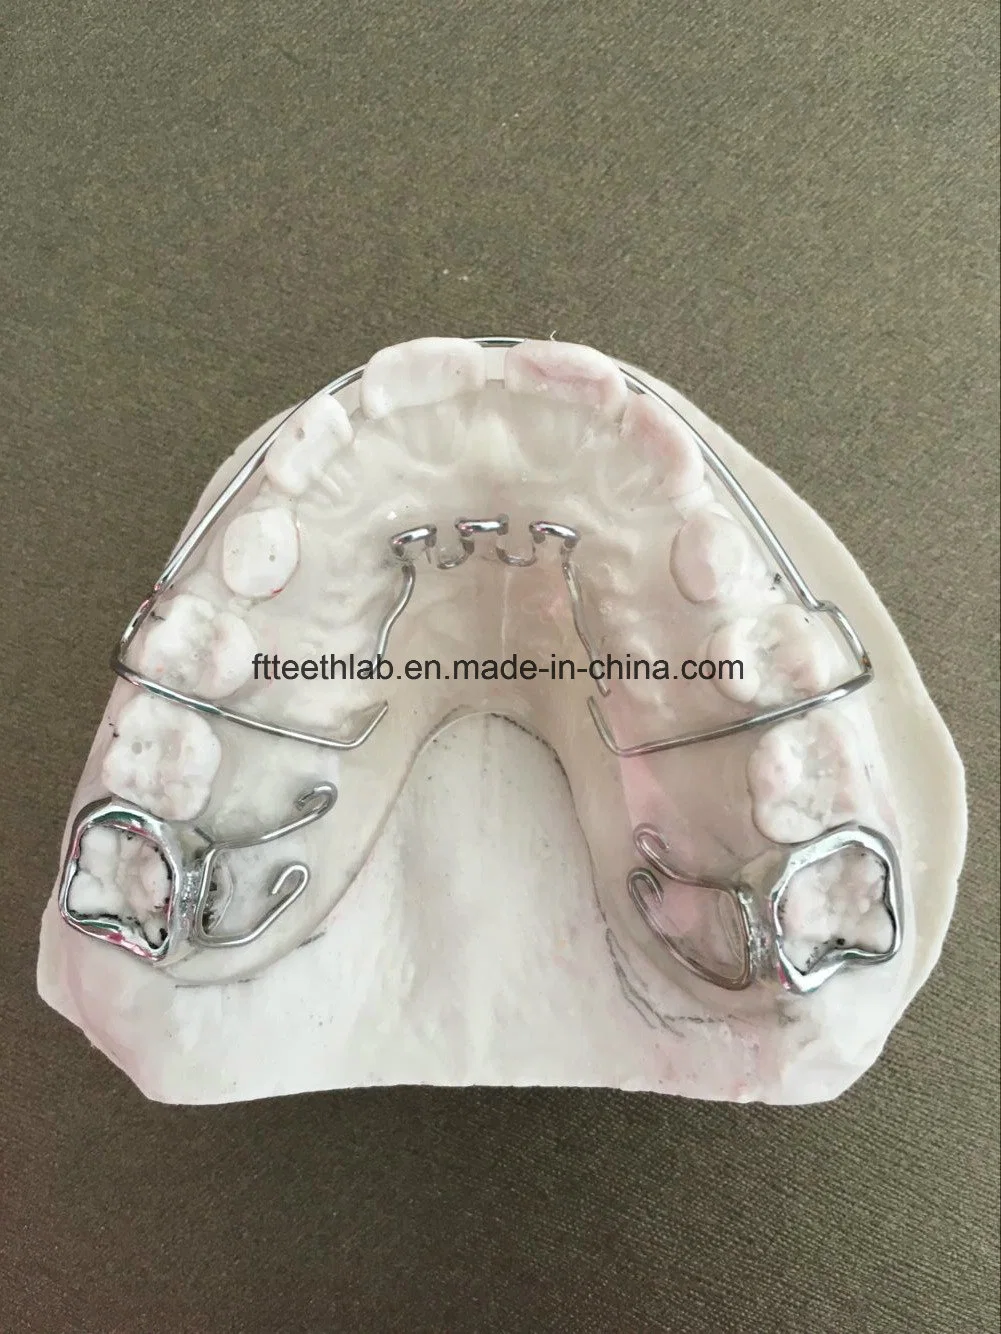 Laboratório de materiais odontológicos Laboratório de implantes dentários hábito dentário personalizado Orthodontico Martelo demolidor